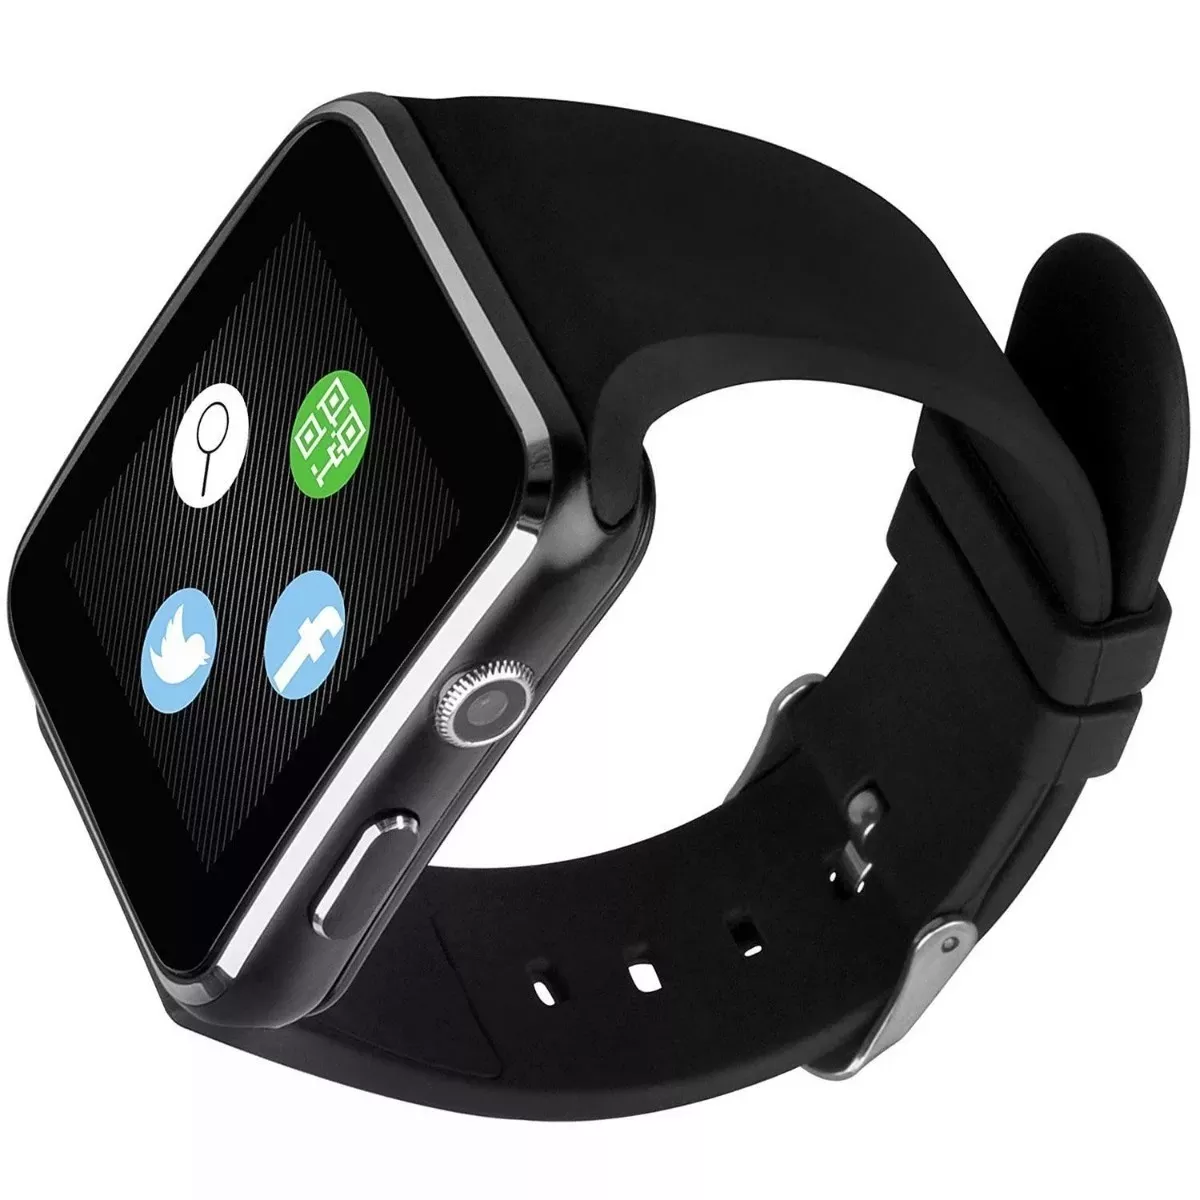 Relógio Inteligente Smartwatch X6 (2020)